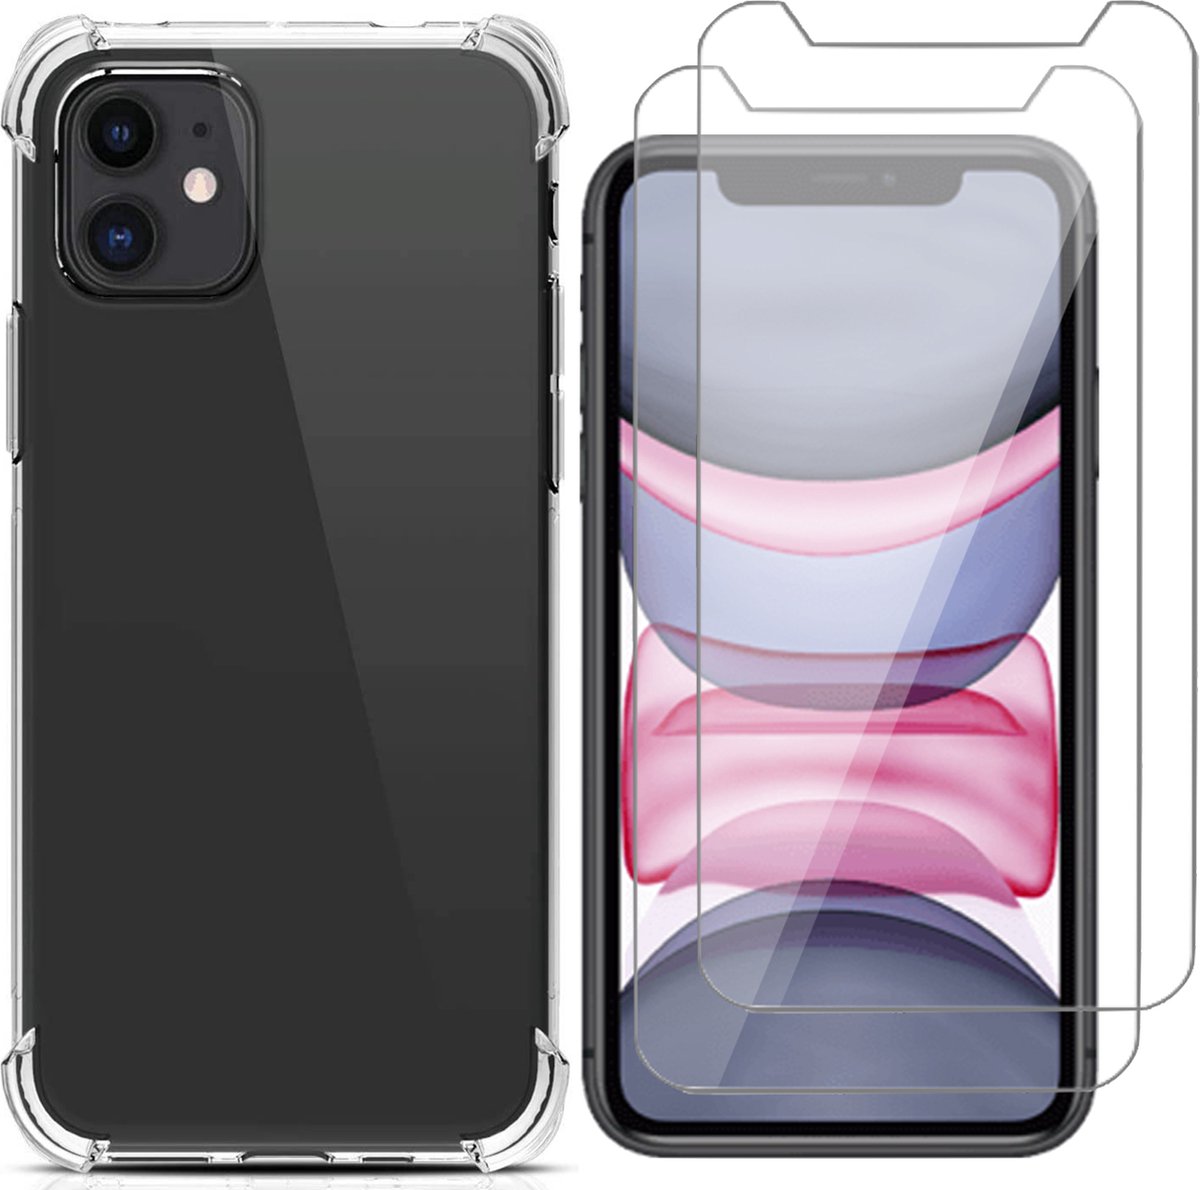 Hoesje geschikt voor iPhone 11 - 2x Screen Protector GlassGuard - Back Cover Case ShockGuard Transparant & Screenprotector